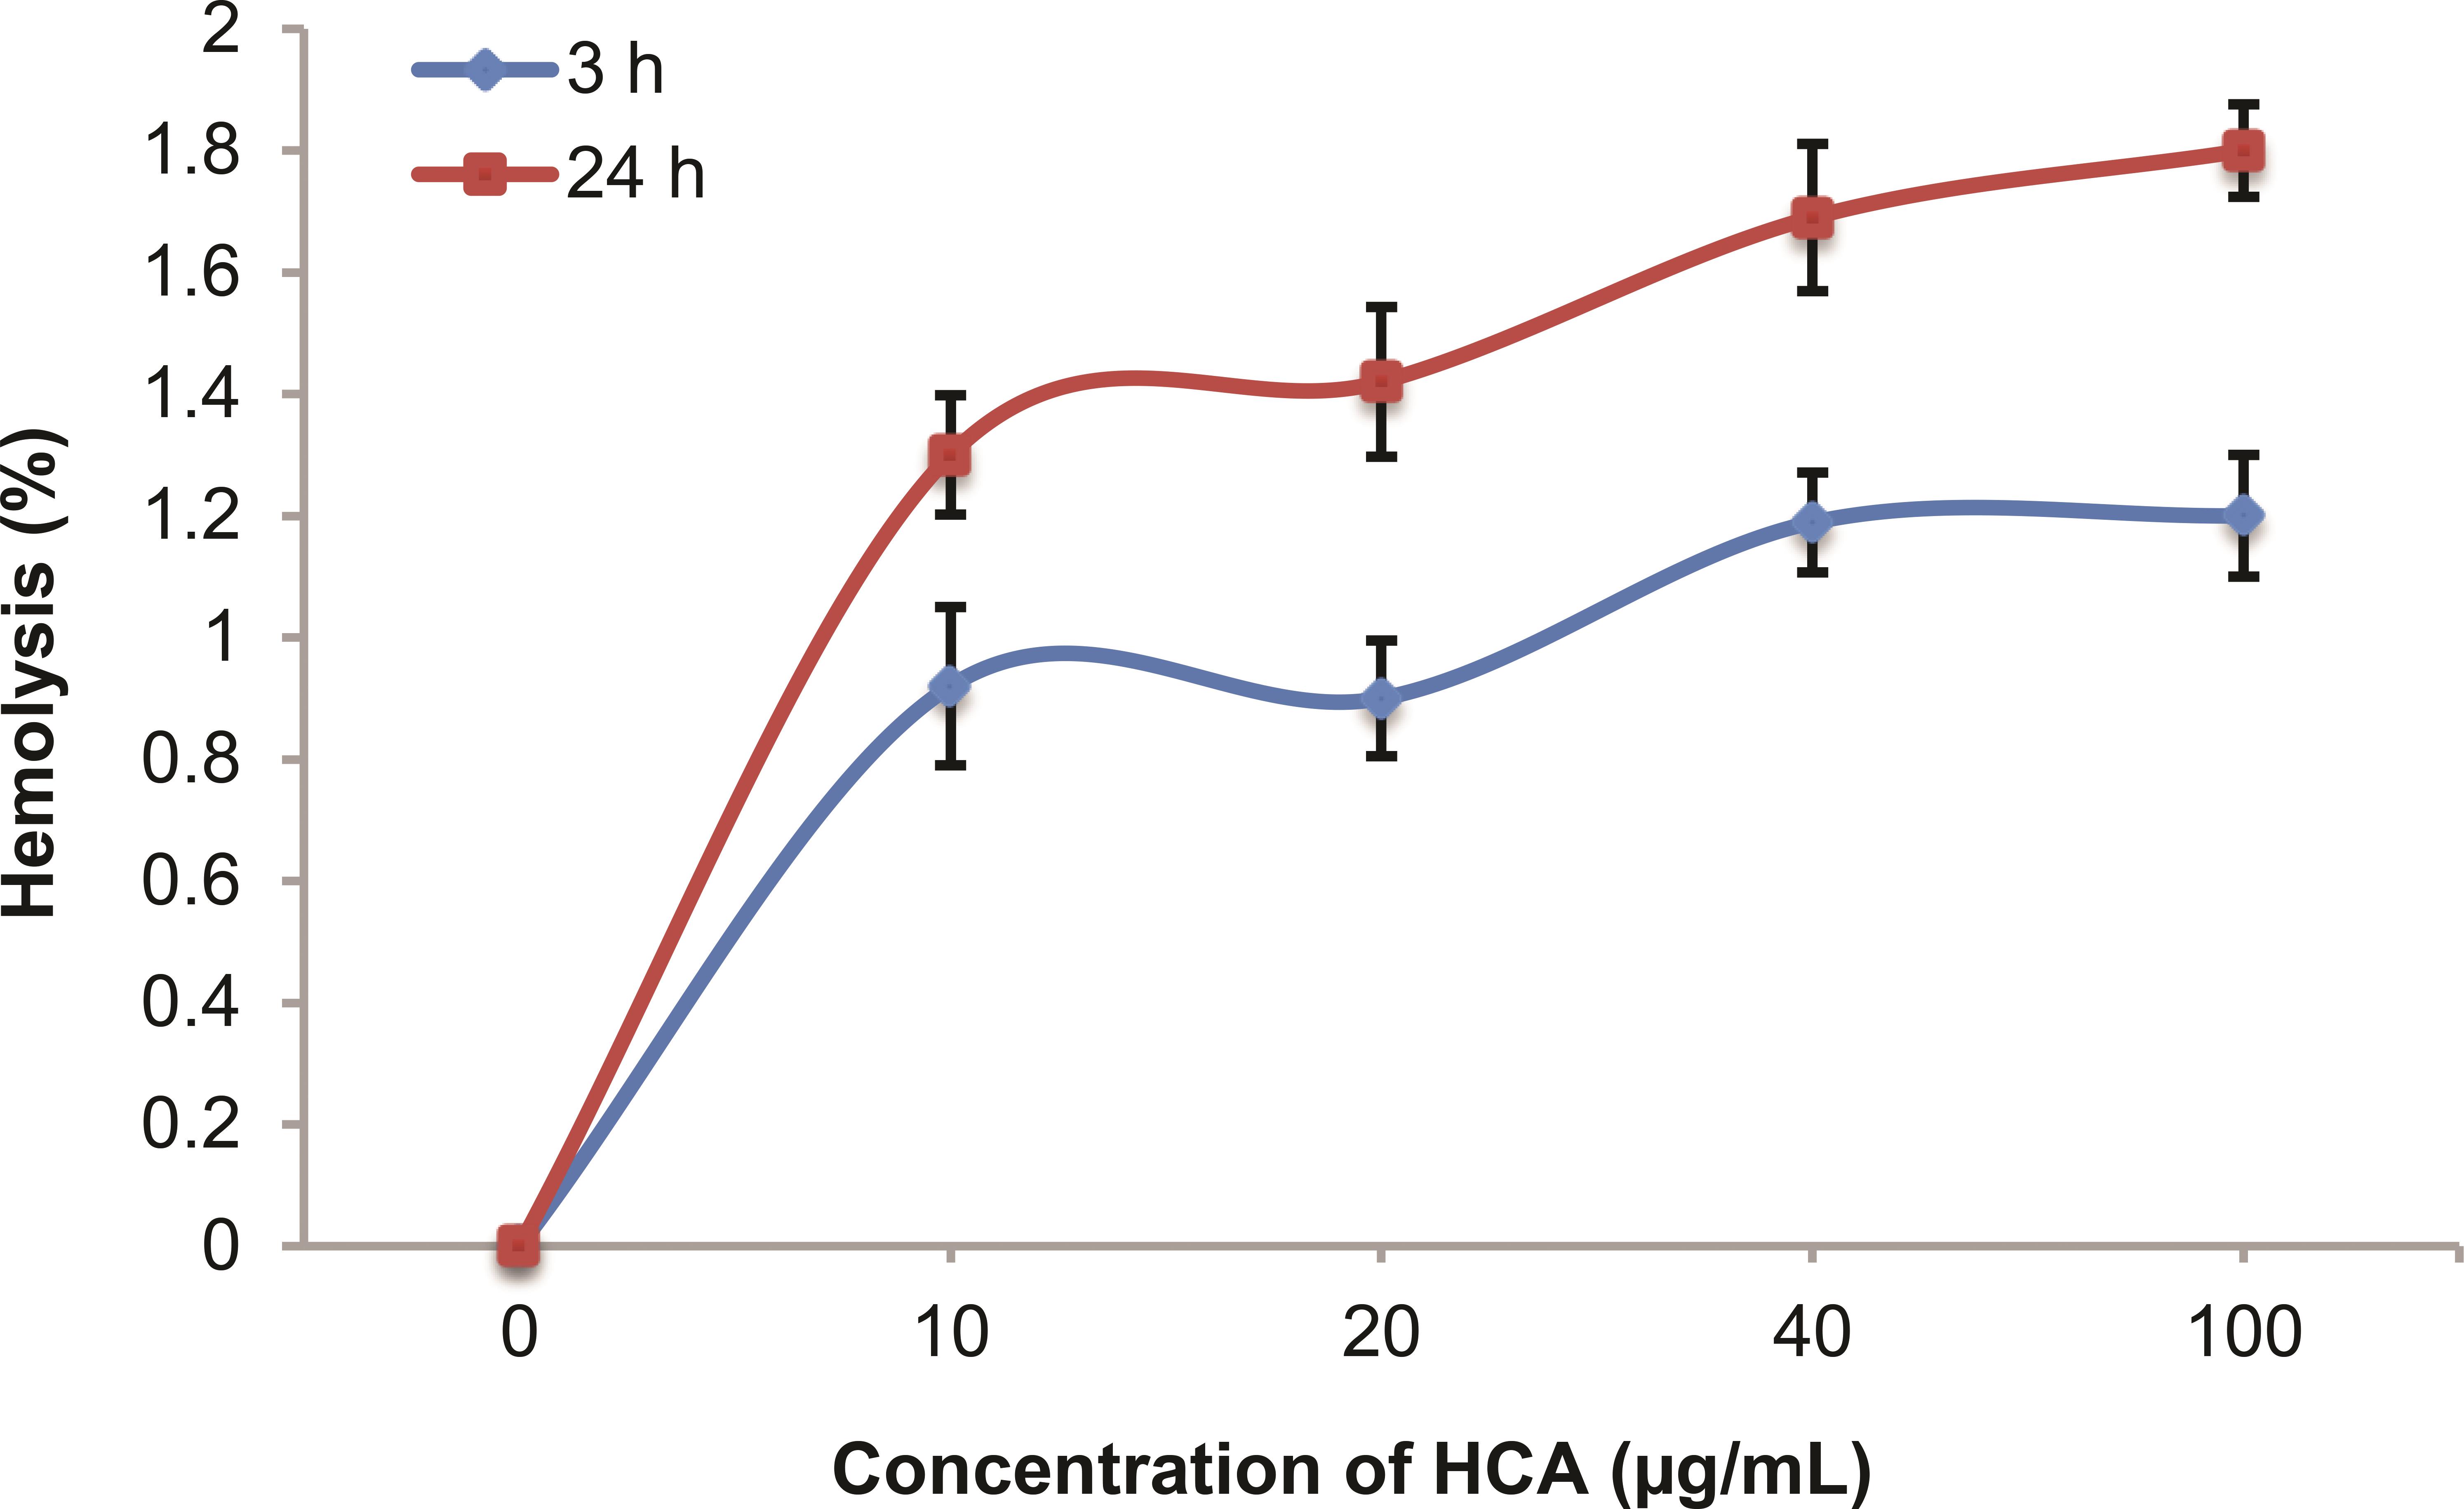 Hemolytic effect of HCA on human erythrocytes. 